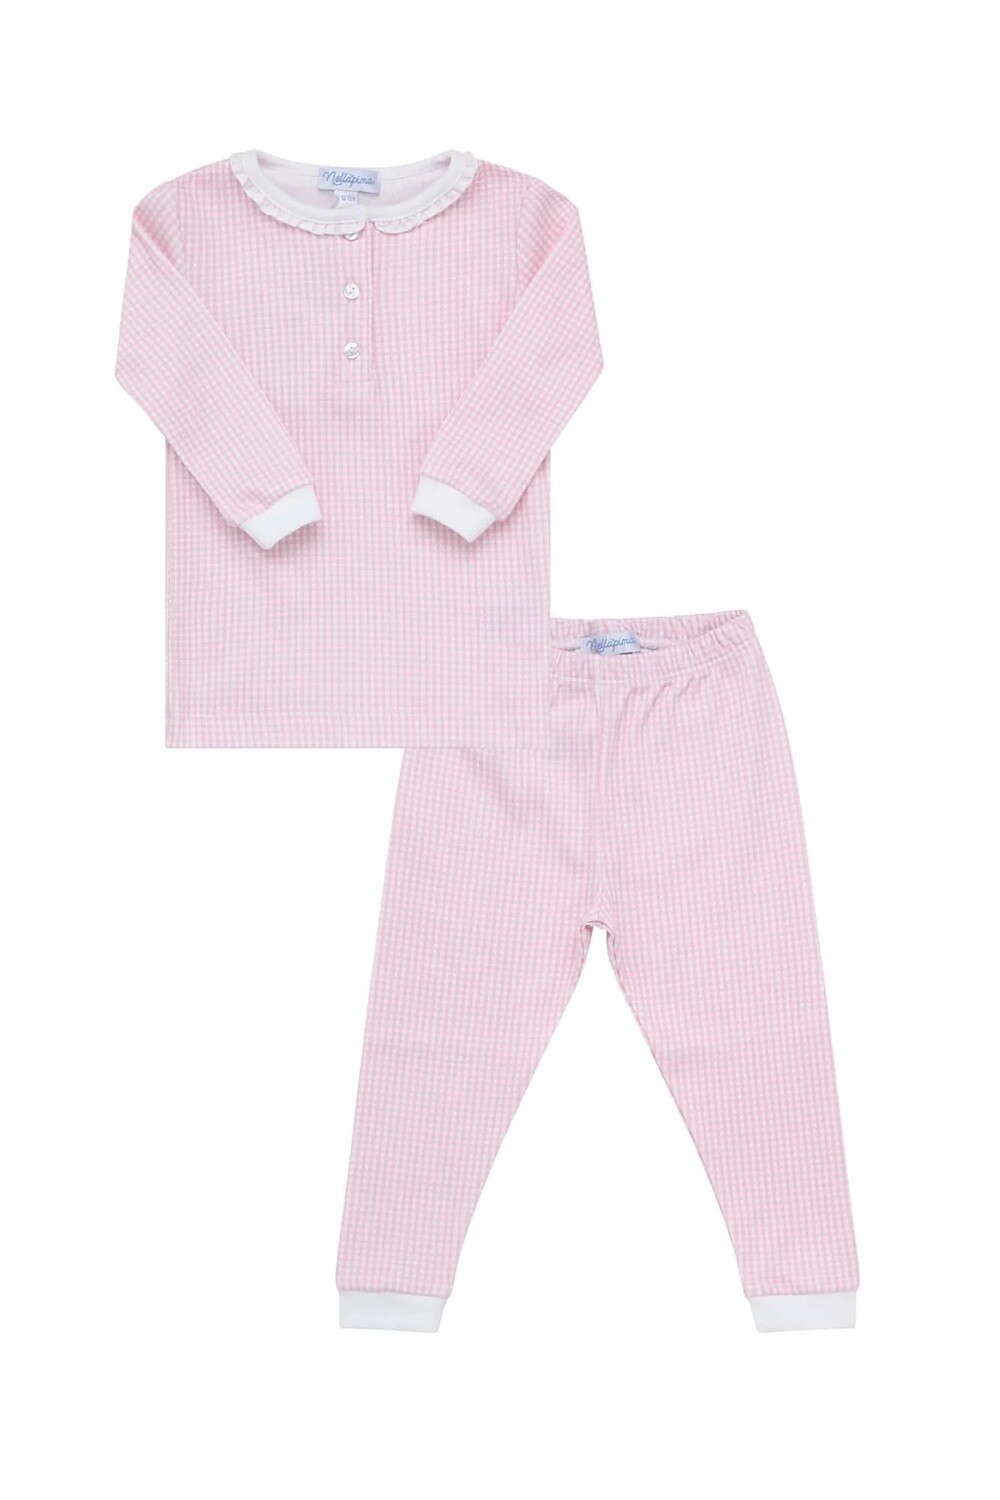 Pink Gingham Pajamas, Size: 3